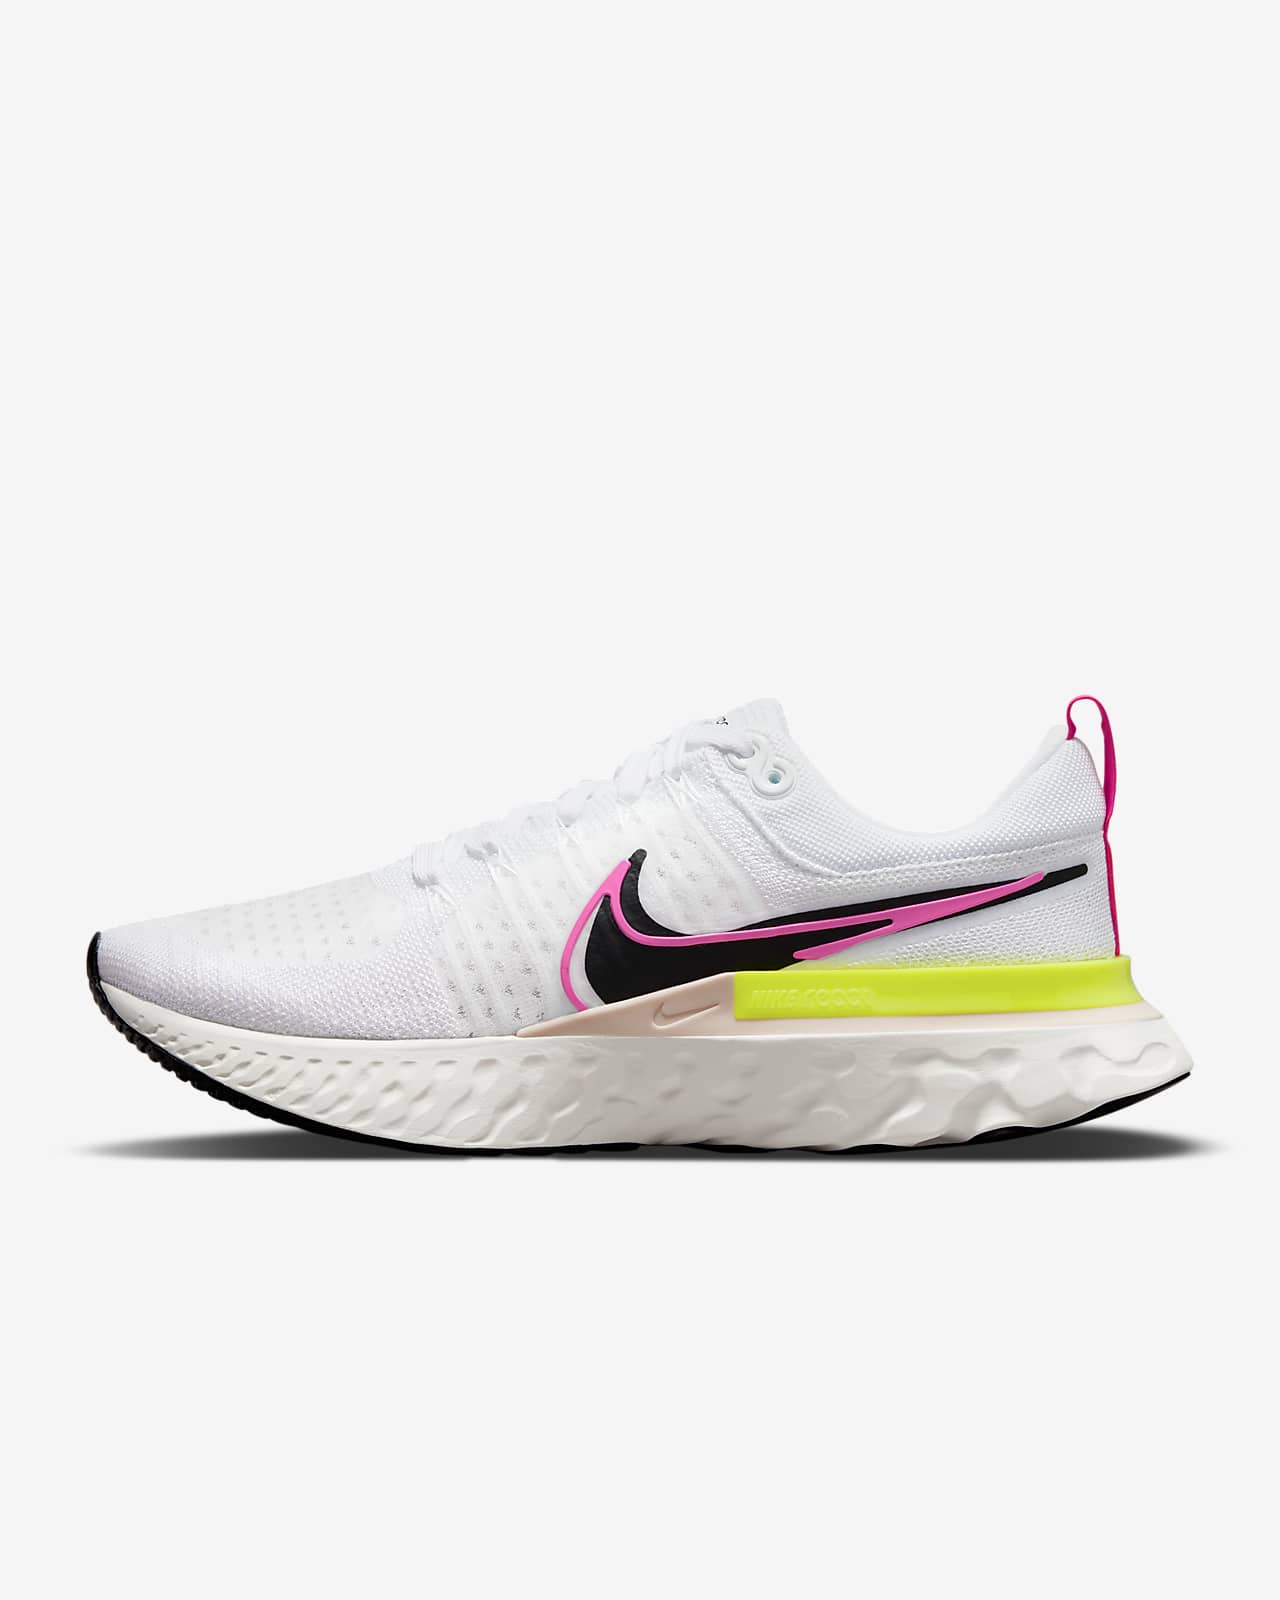 Nike React Infinity Run Flyknit 2 Men's Running Shoe